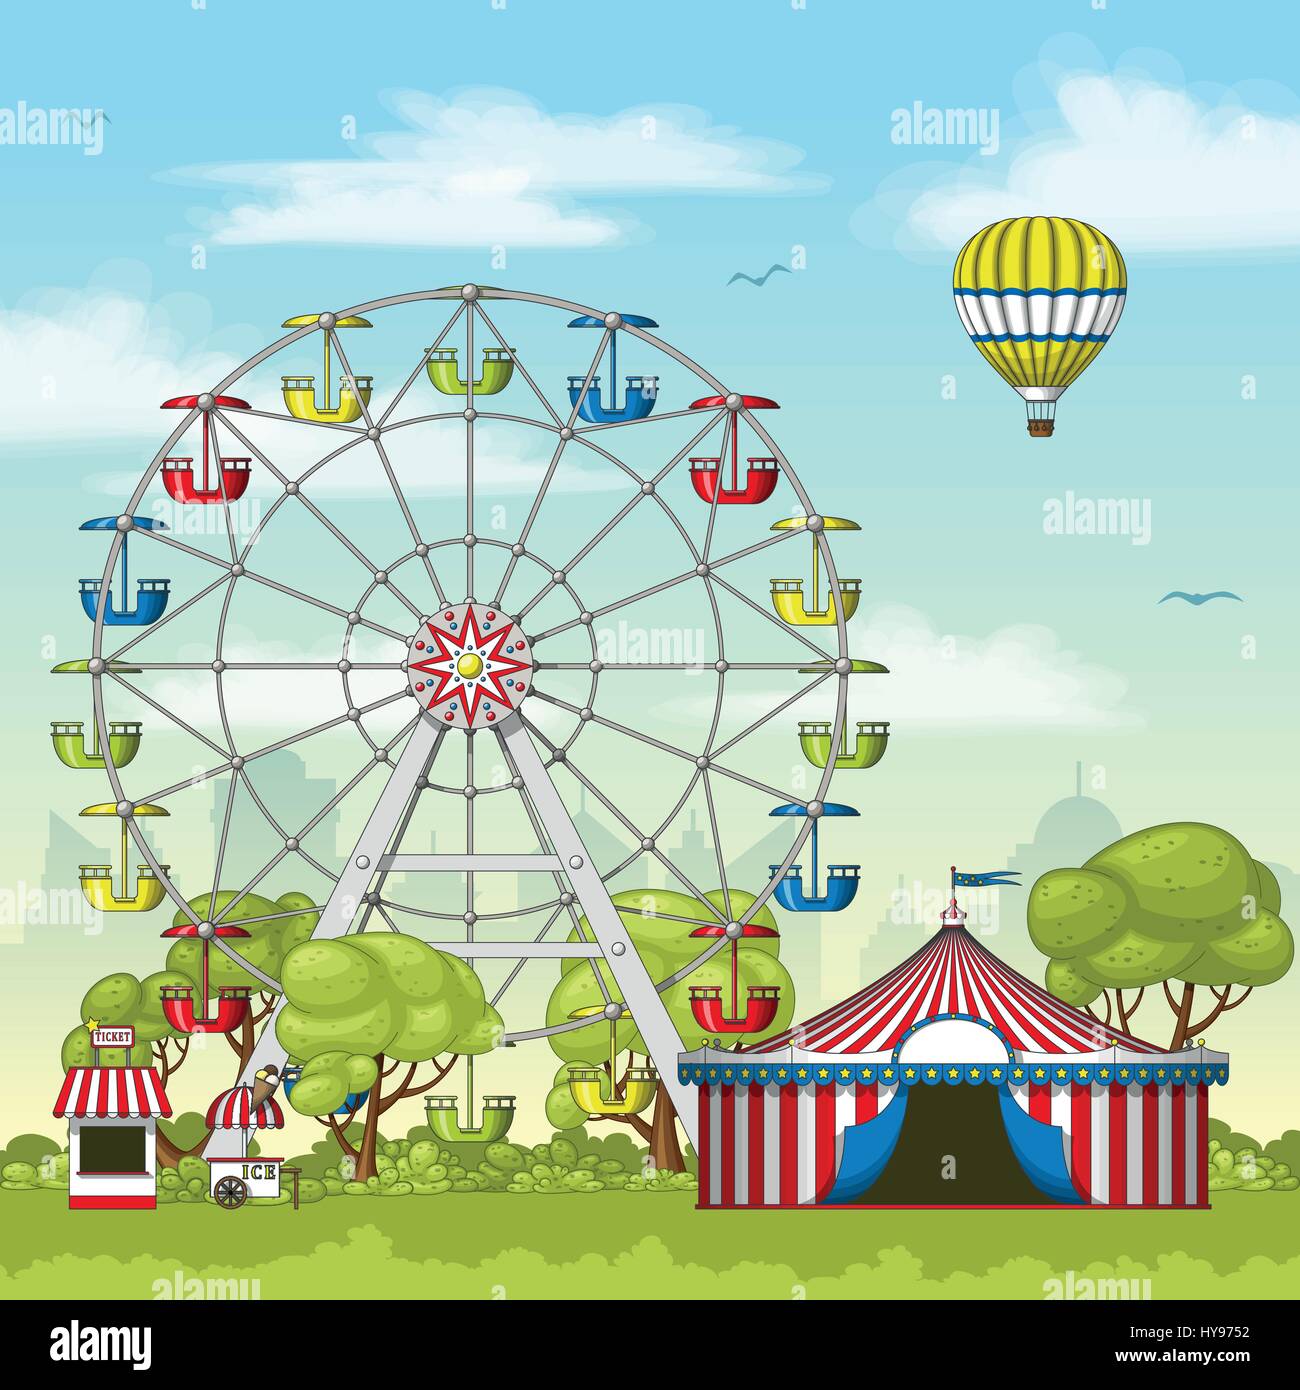 Amusement park Stock Vector Images - Alamy